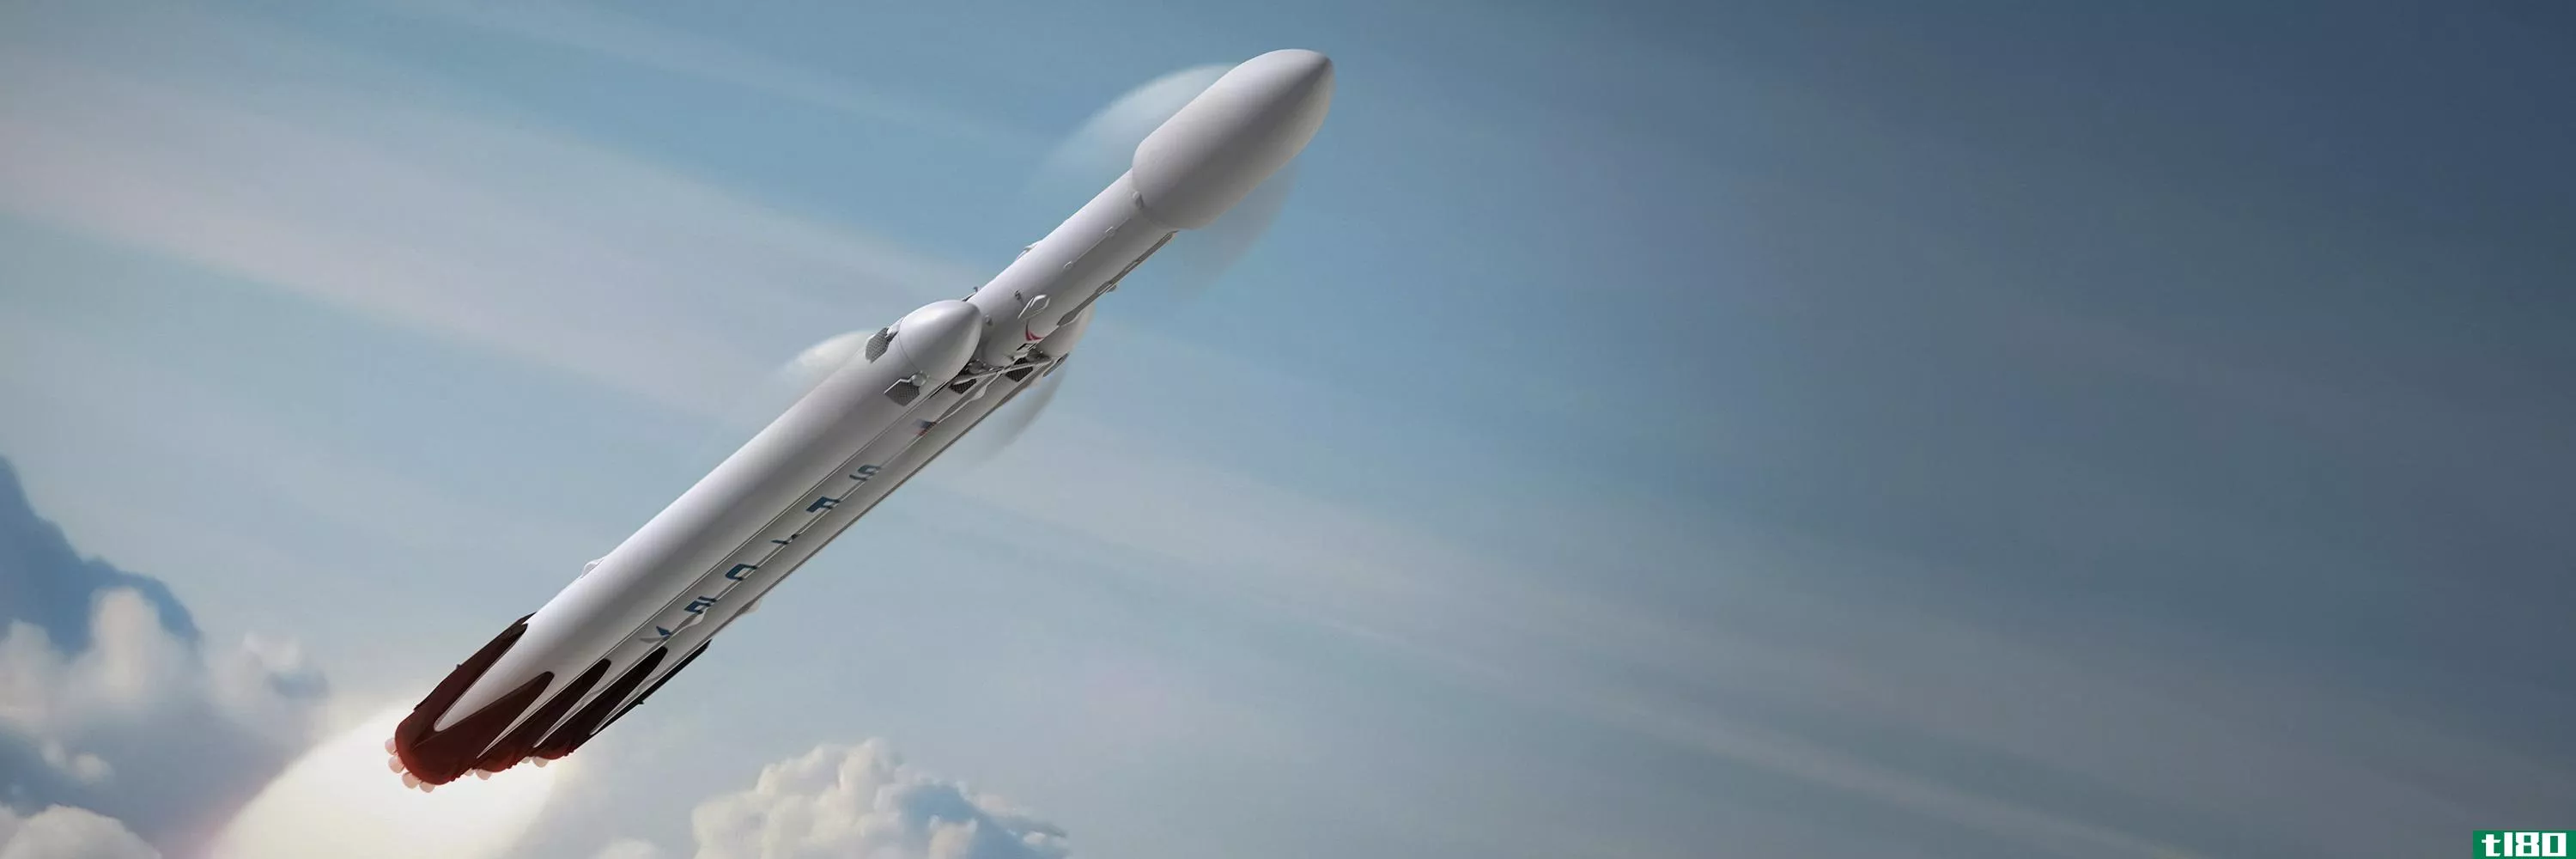 经过推迟，spacex的大型猎鹰重型火箭将于2016年春季发射